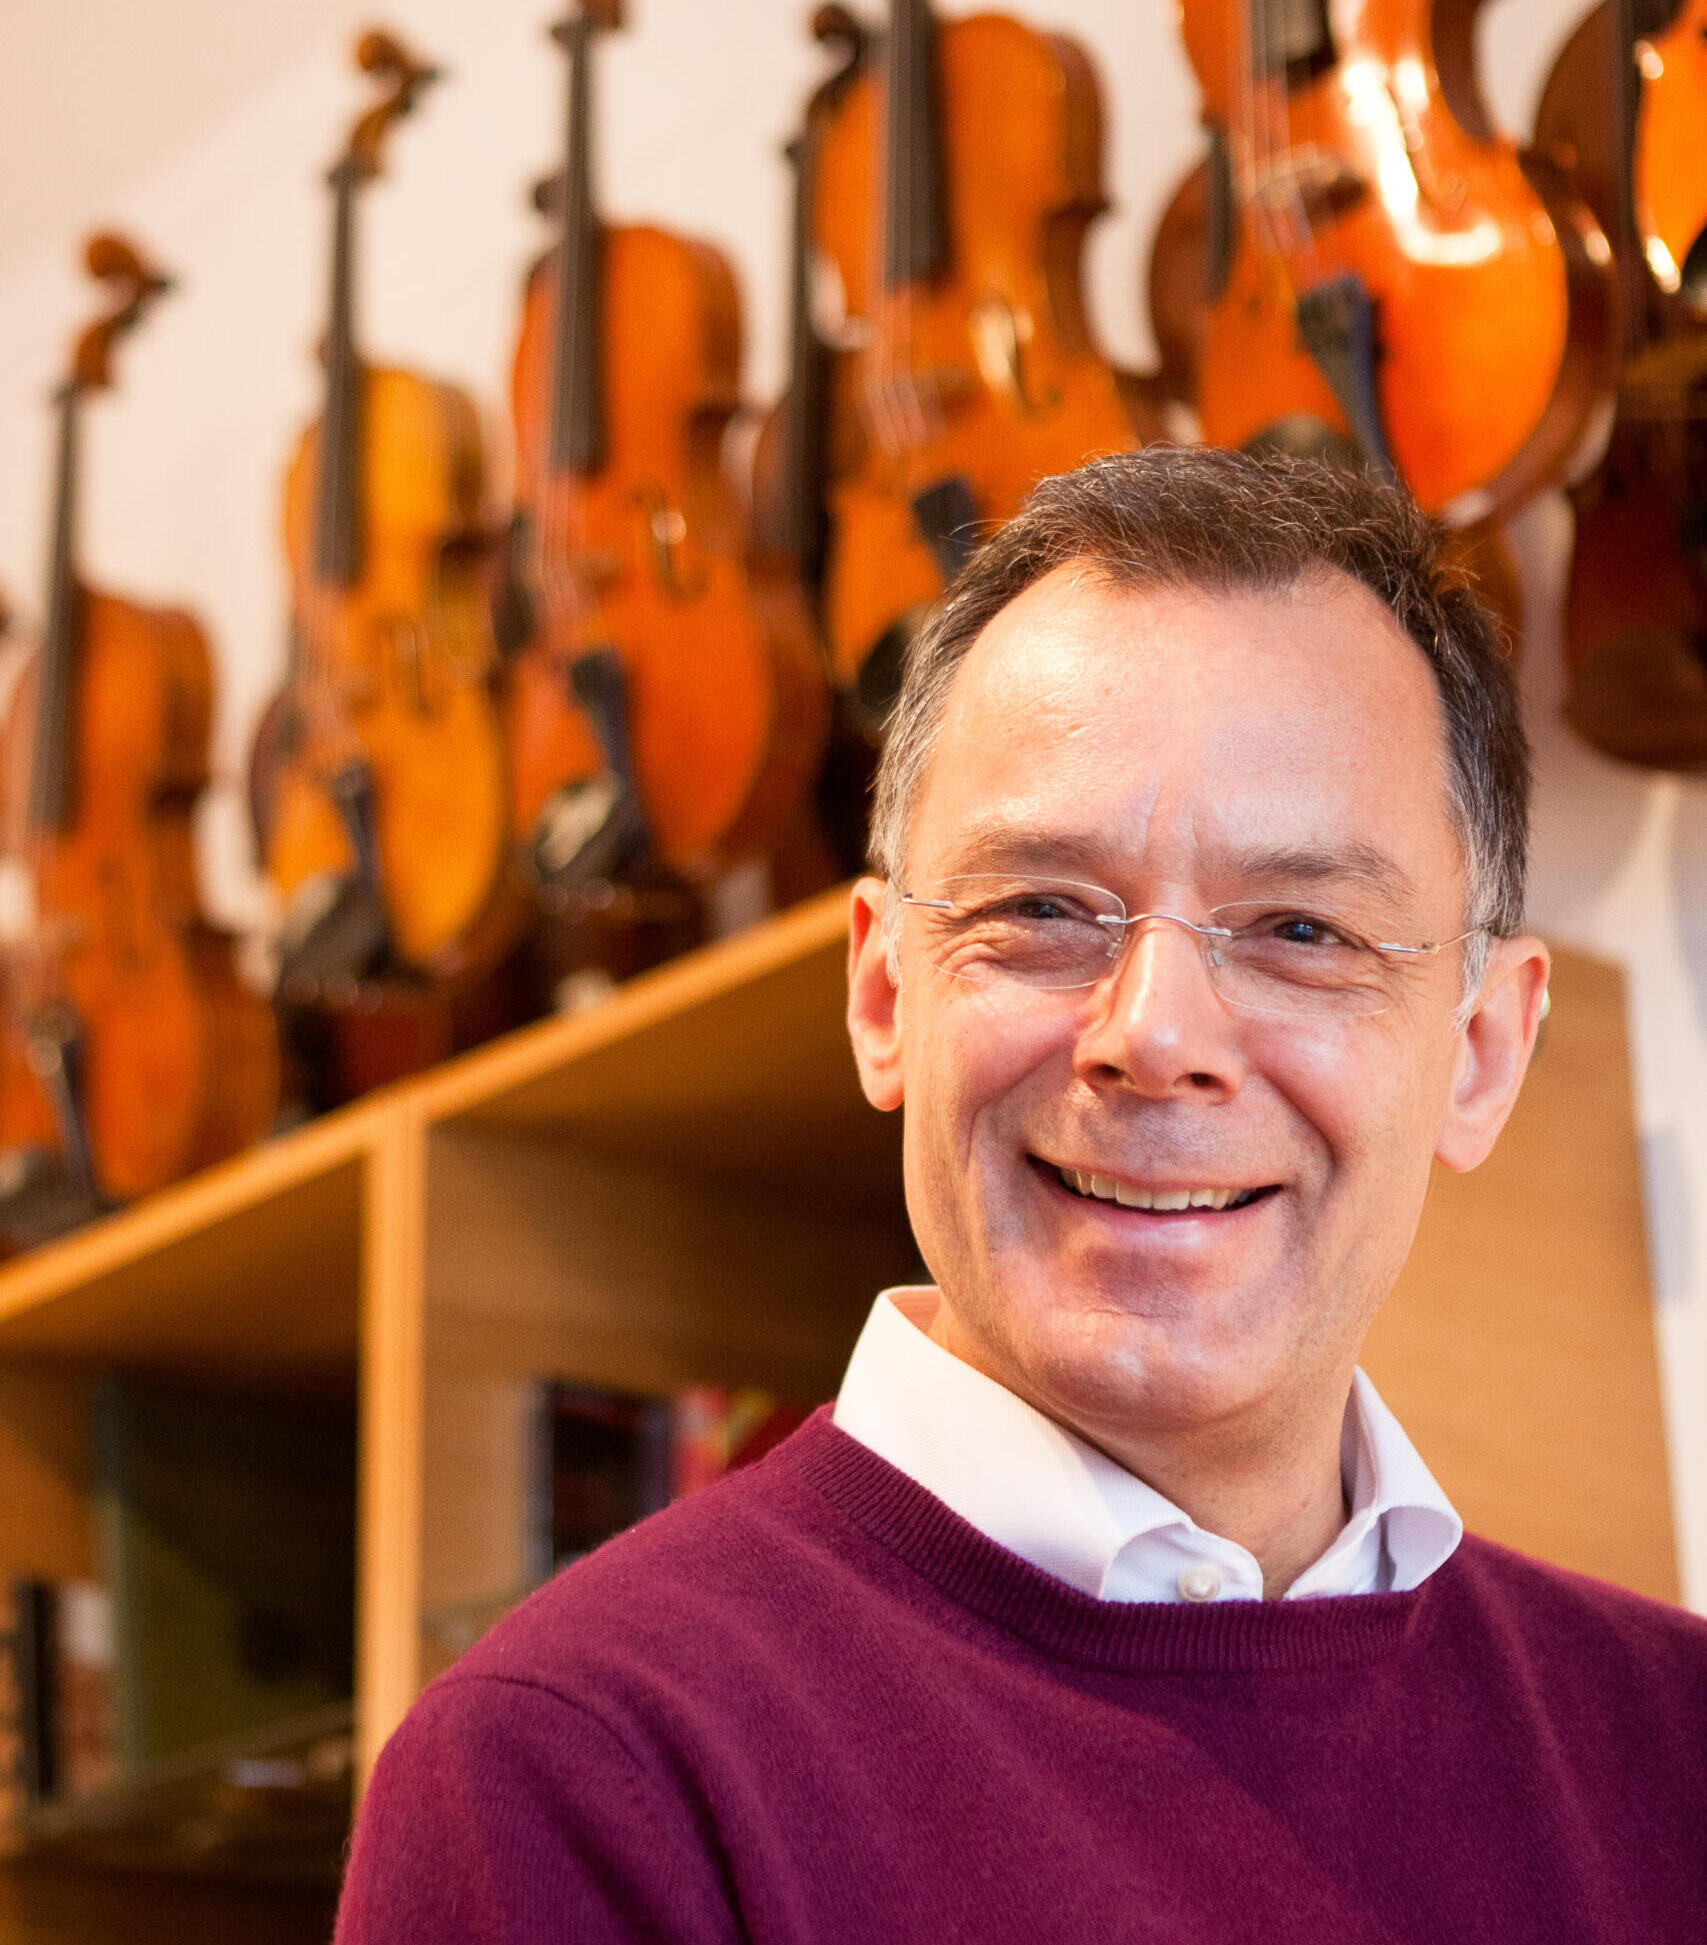 Portraitfoto des Geigenbauers Jörg Trautmann. Im Hintergrund sind diverse Geigen auf einem Regal zu sehen.